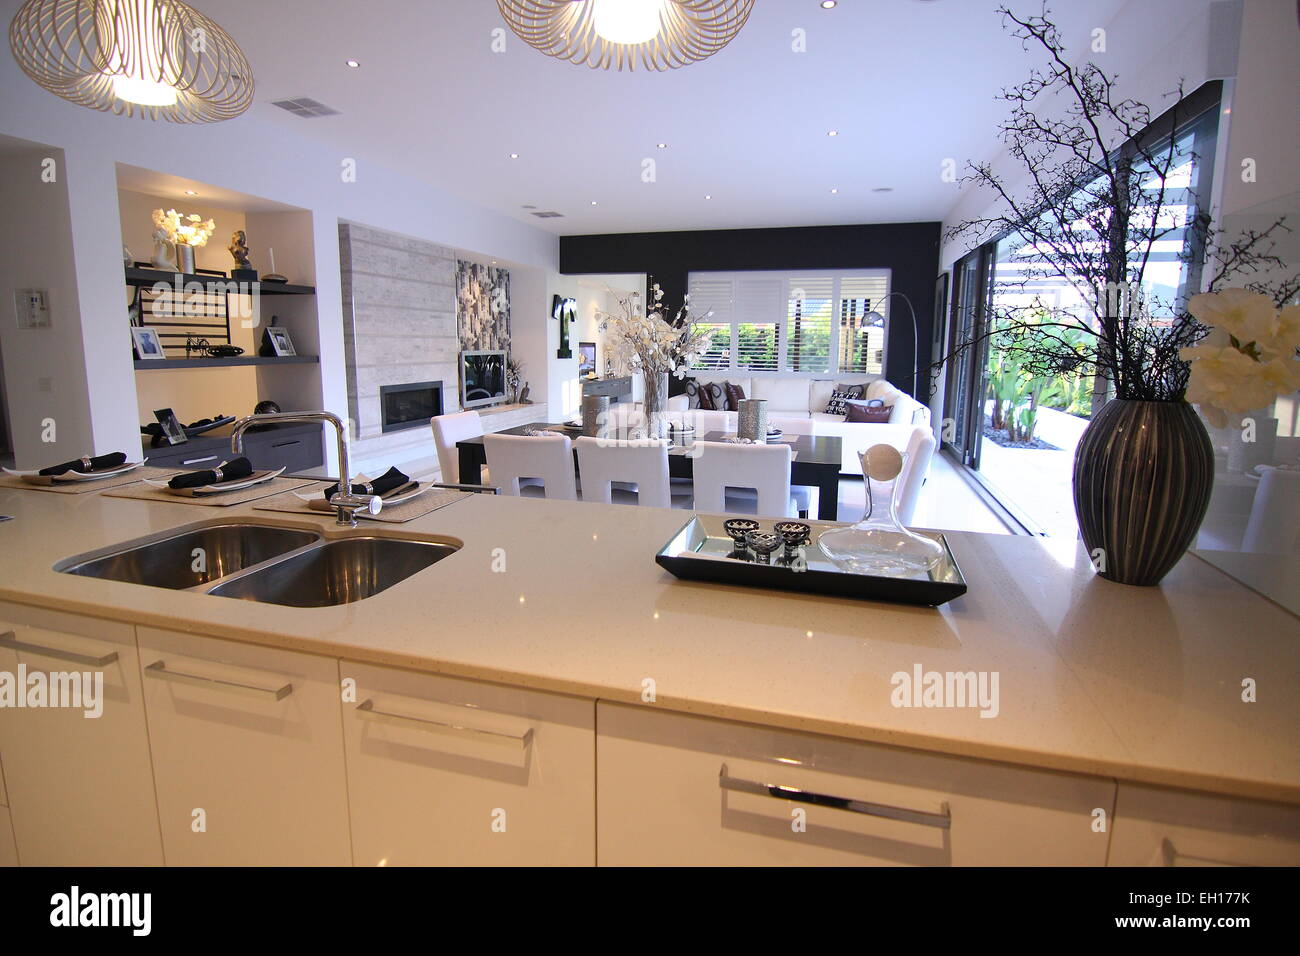 Sala de estar y cocina blanca en una casa moderna Foto de stock